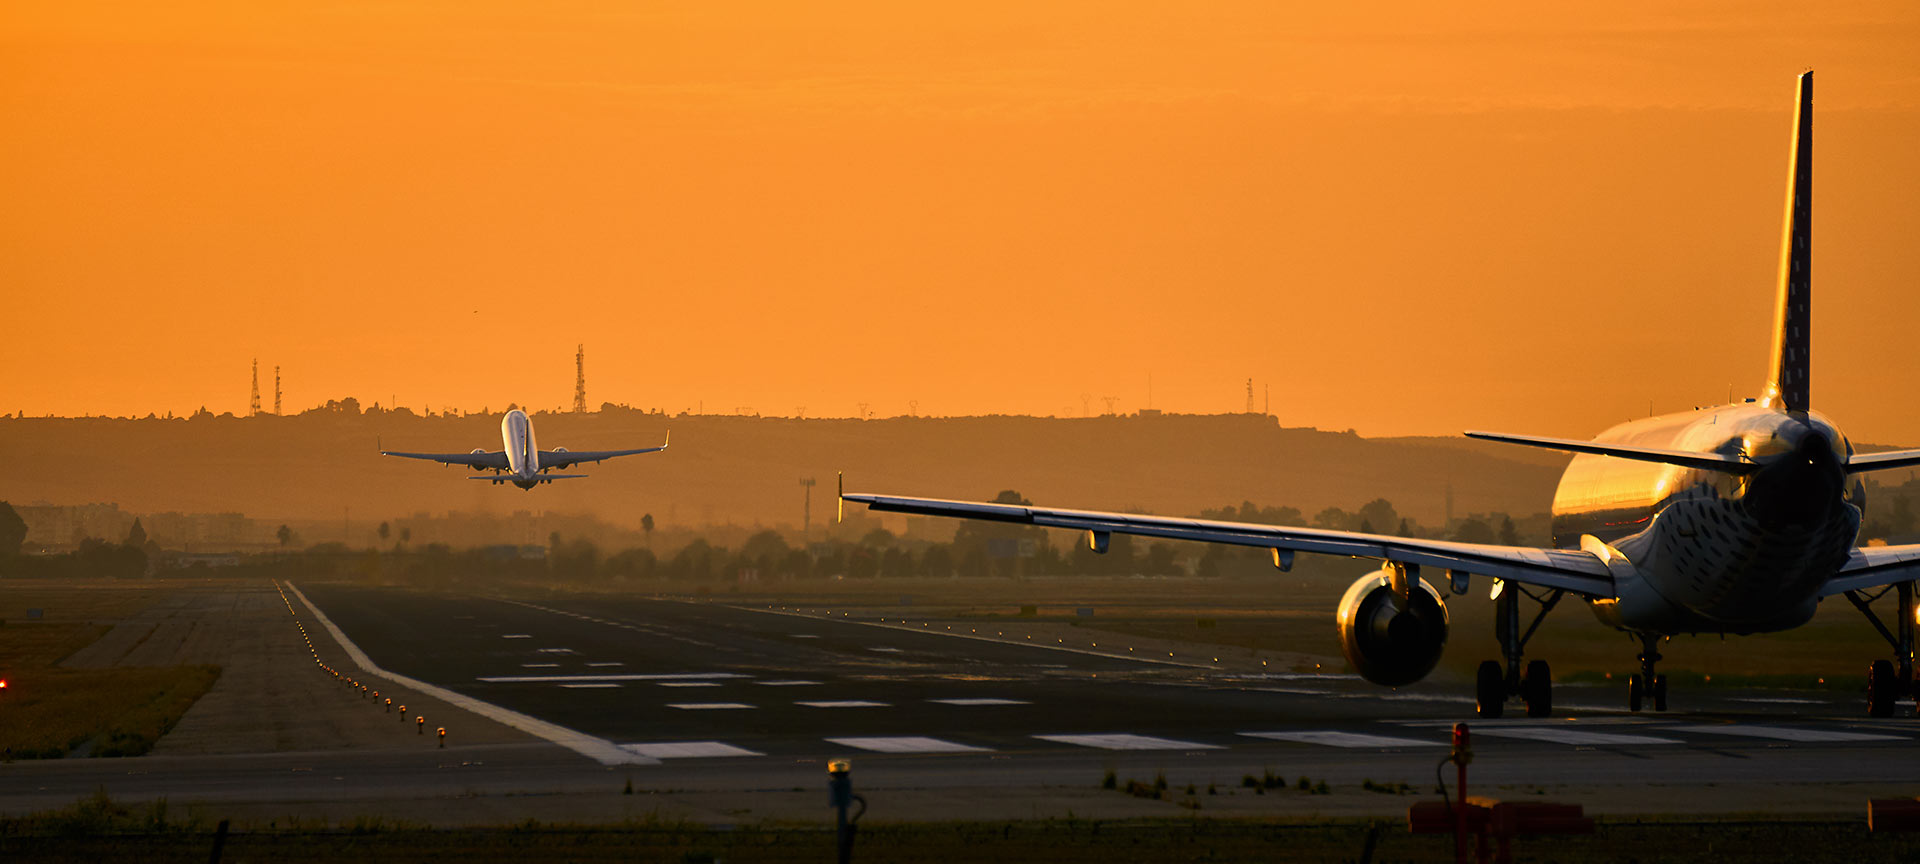 Vliegtuigen op startbaan bij zonsondergang.